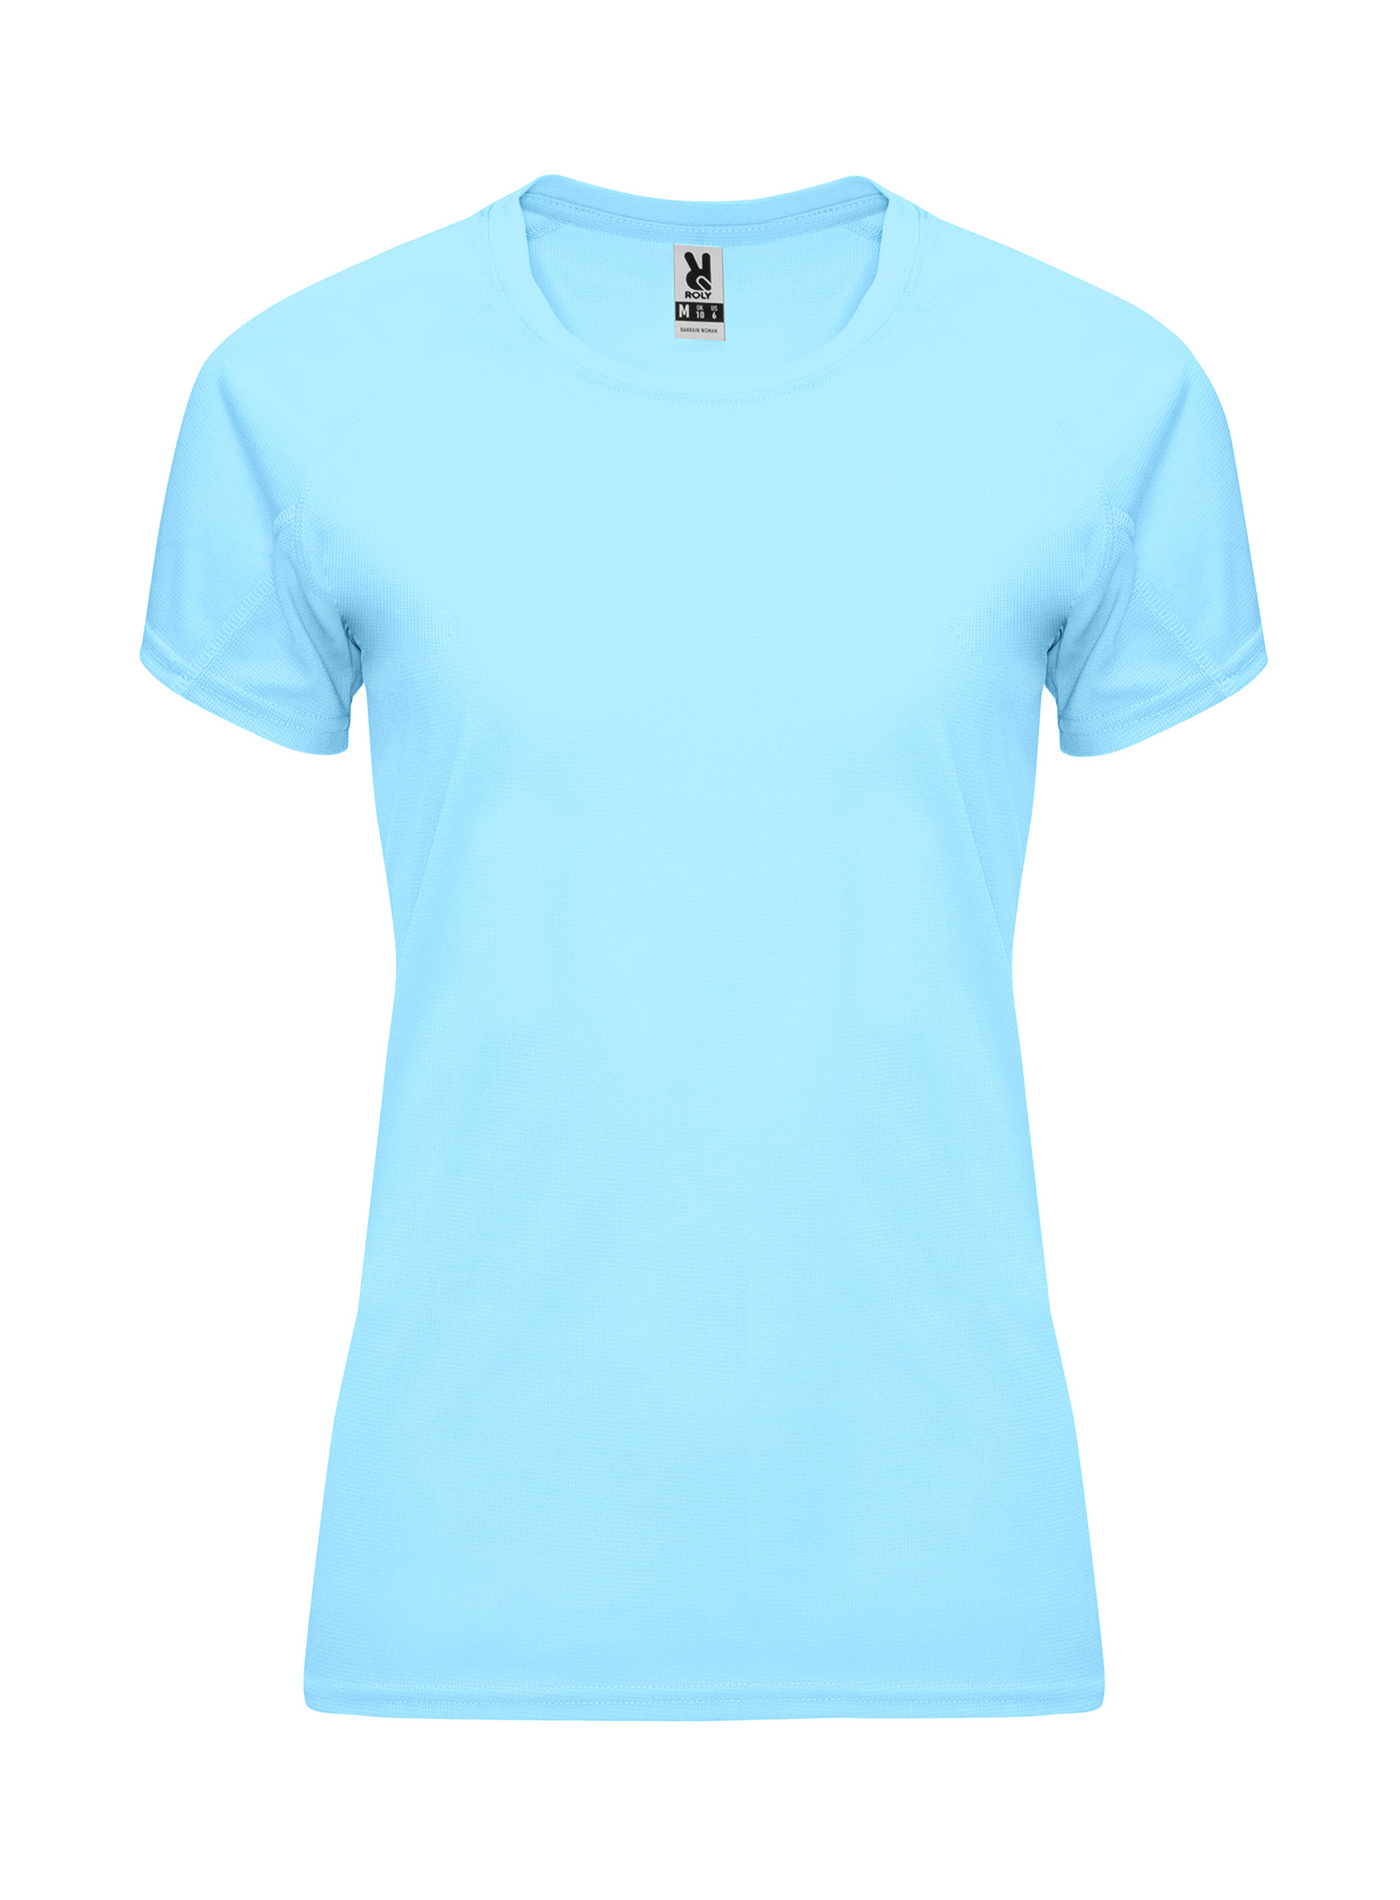 Dámské sportovní tričko Roly Bahrain - Blankytně modrá XXL